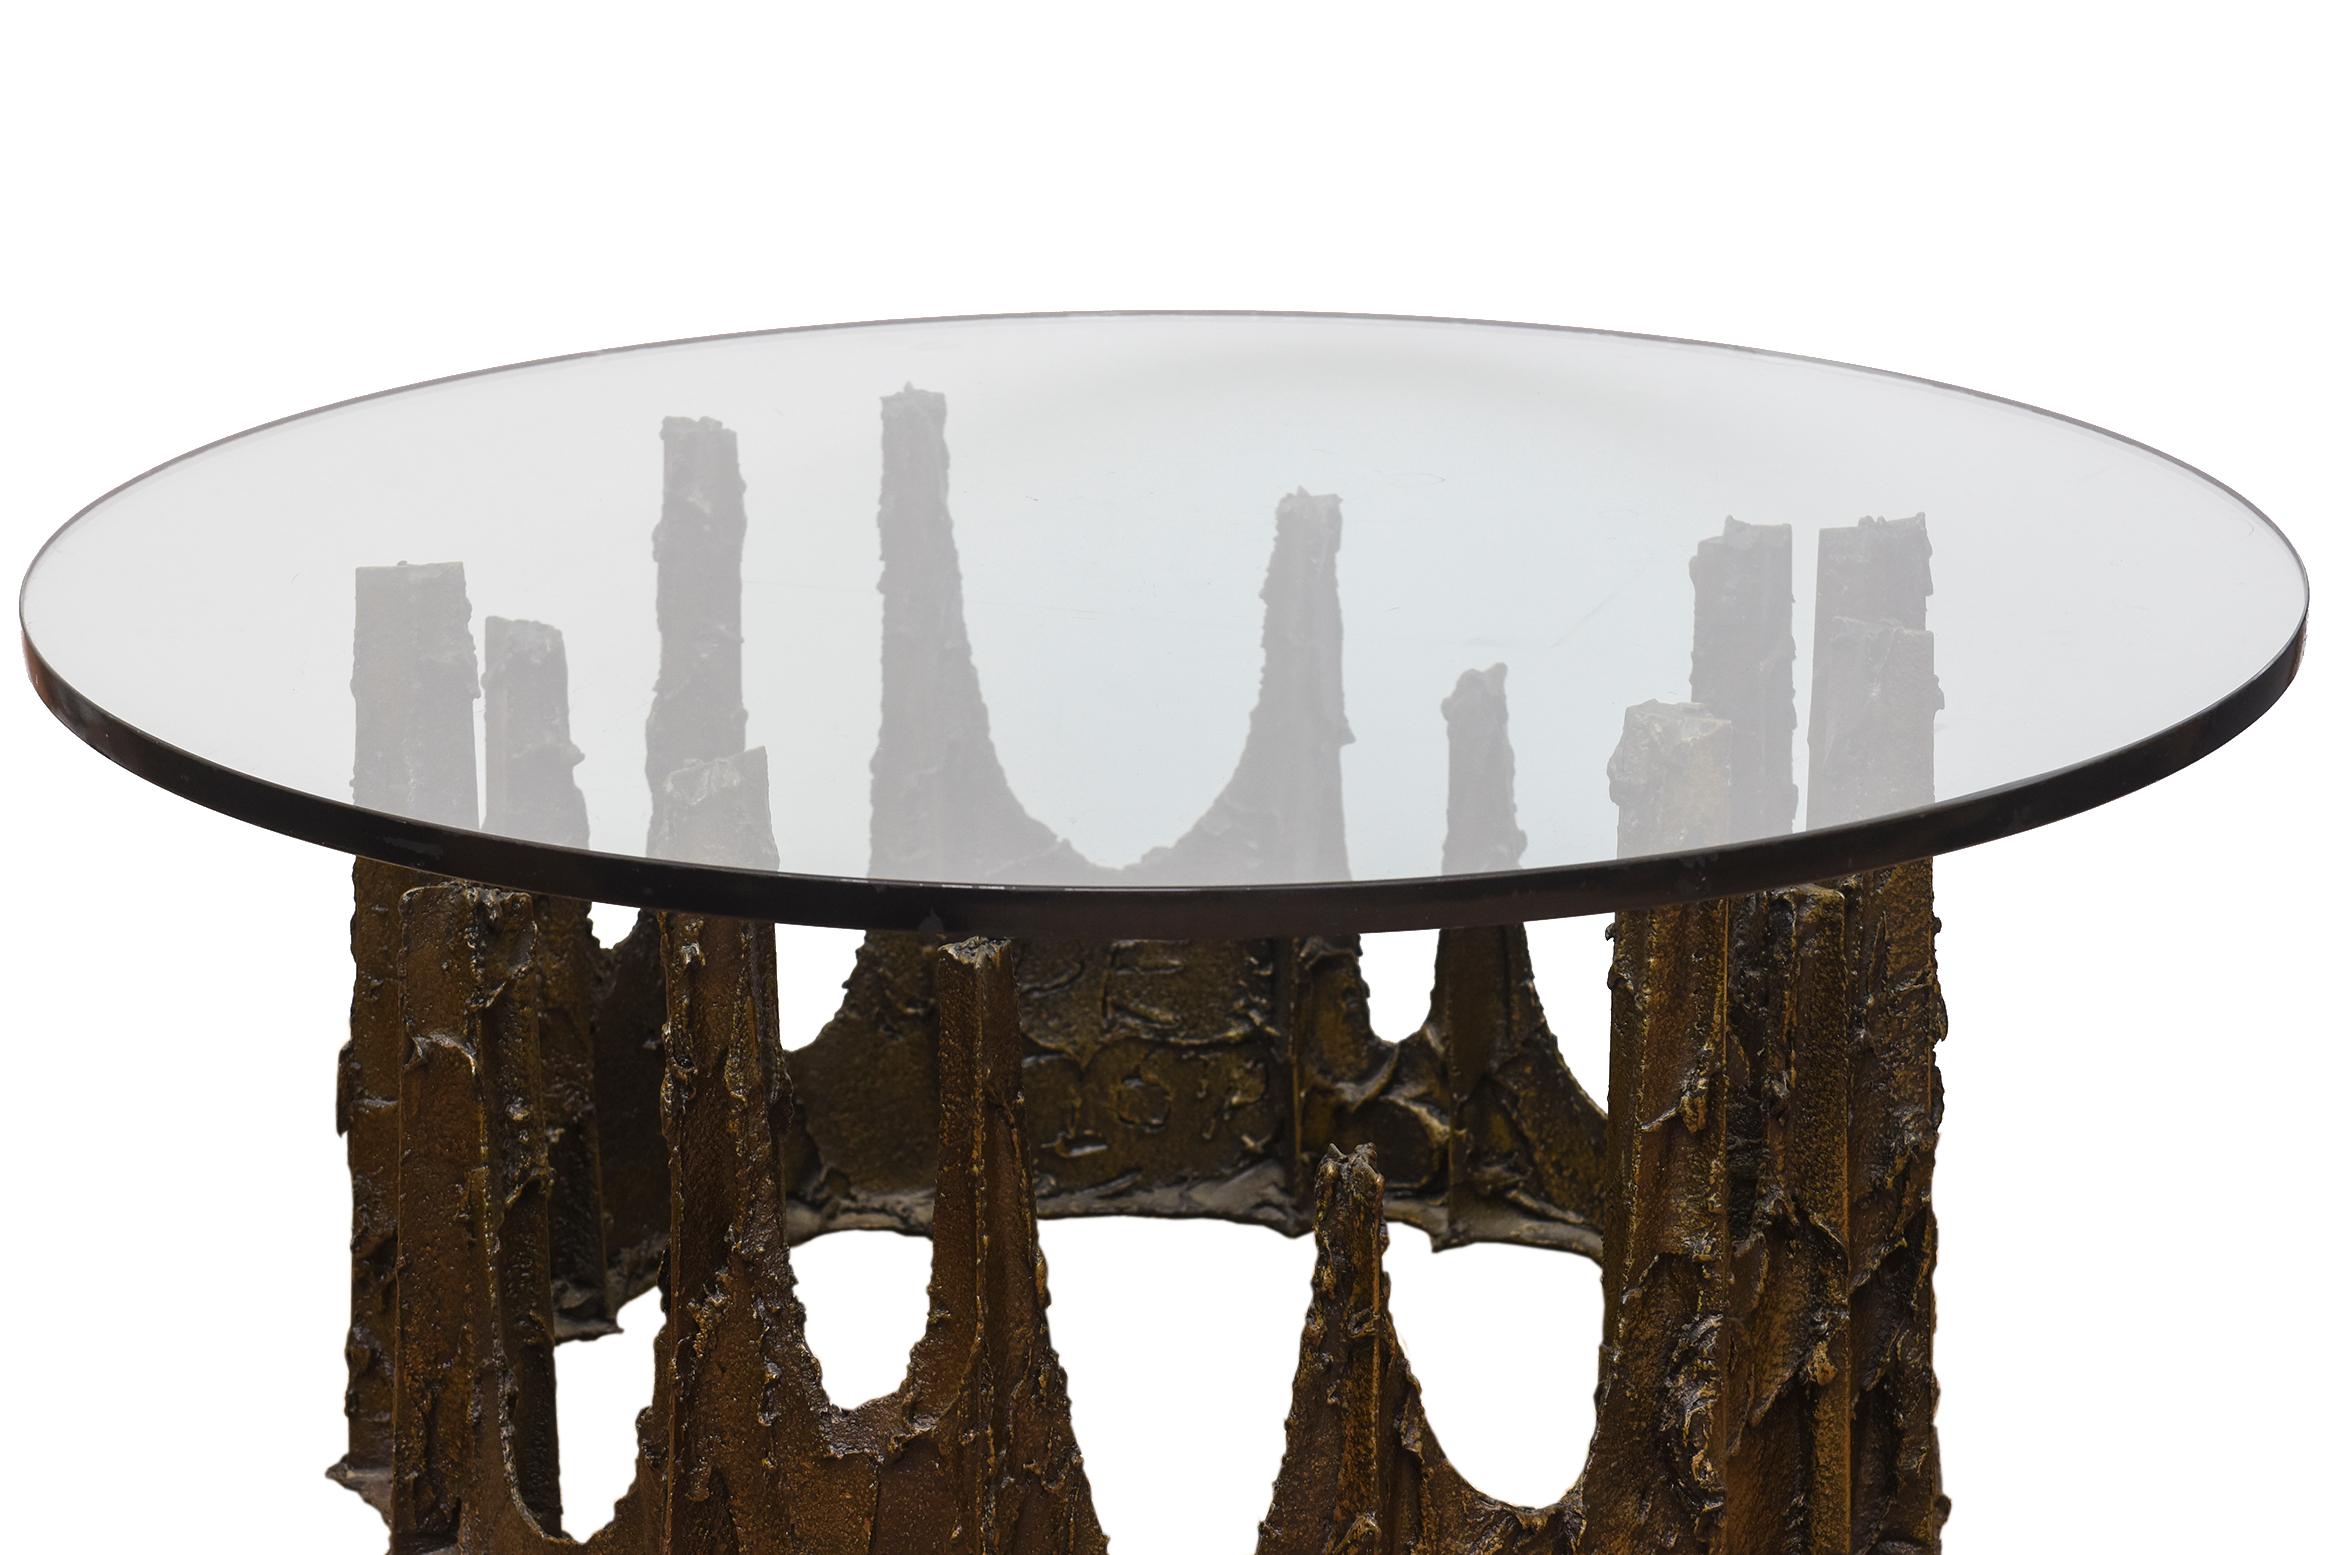 Cette merveilleuse table de cocktail sculptée signée Paul Evans, datant de 1976, ressemble à un château fondu de gouttes de bronze de différentes hauteurs aux formes brutalistes et couronnées. On l'appelle la table des stalagmites. Signé PE76. Il a